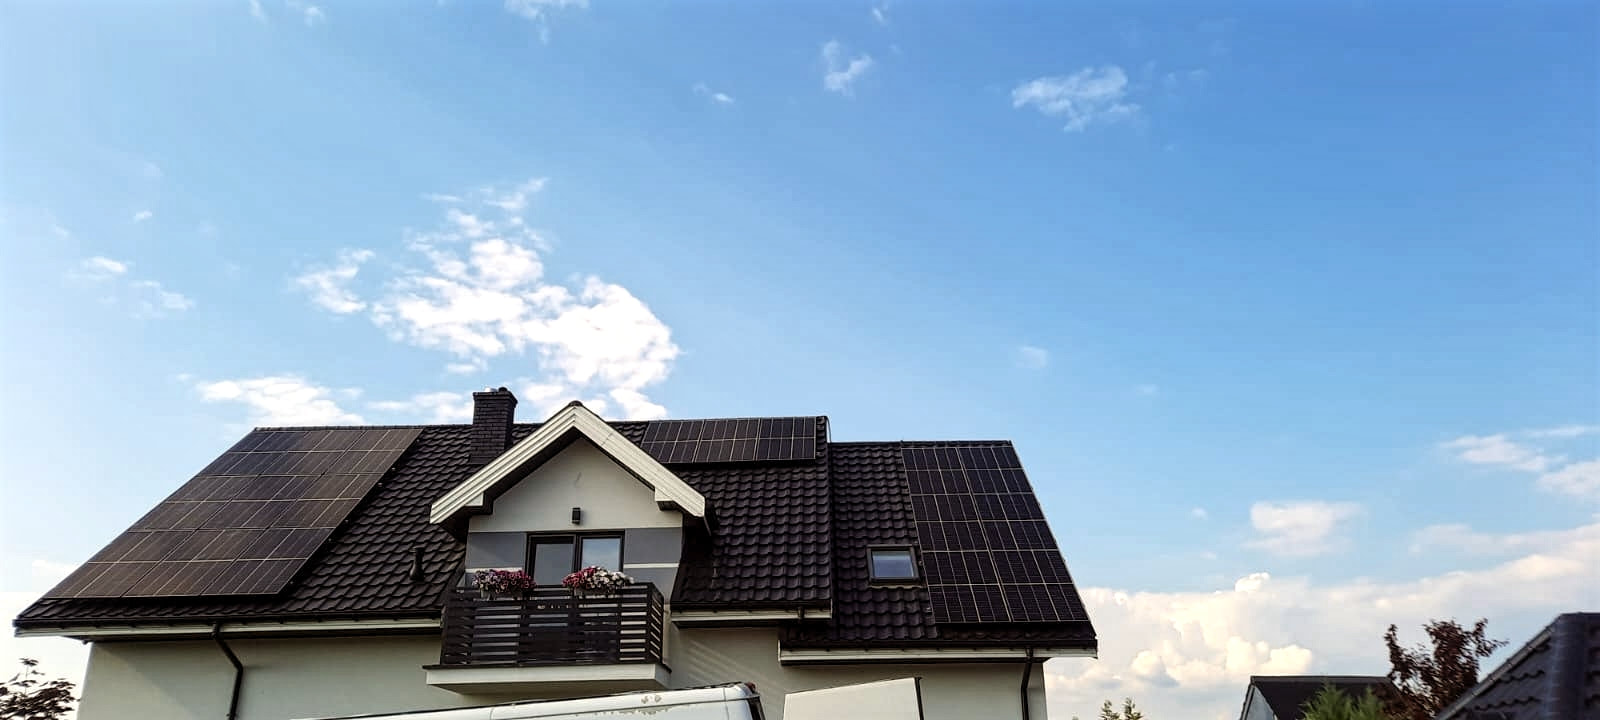 Widok na kompletną instalację fotowoltaiczną na dachu skośnym domu jednorodzinnego w Płocku, realizowaną przez SOLAND.